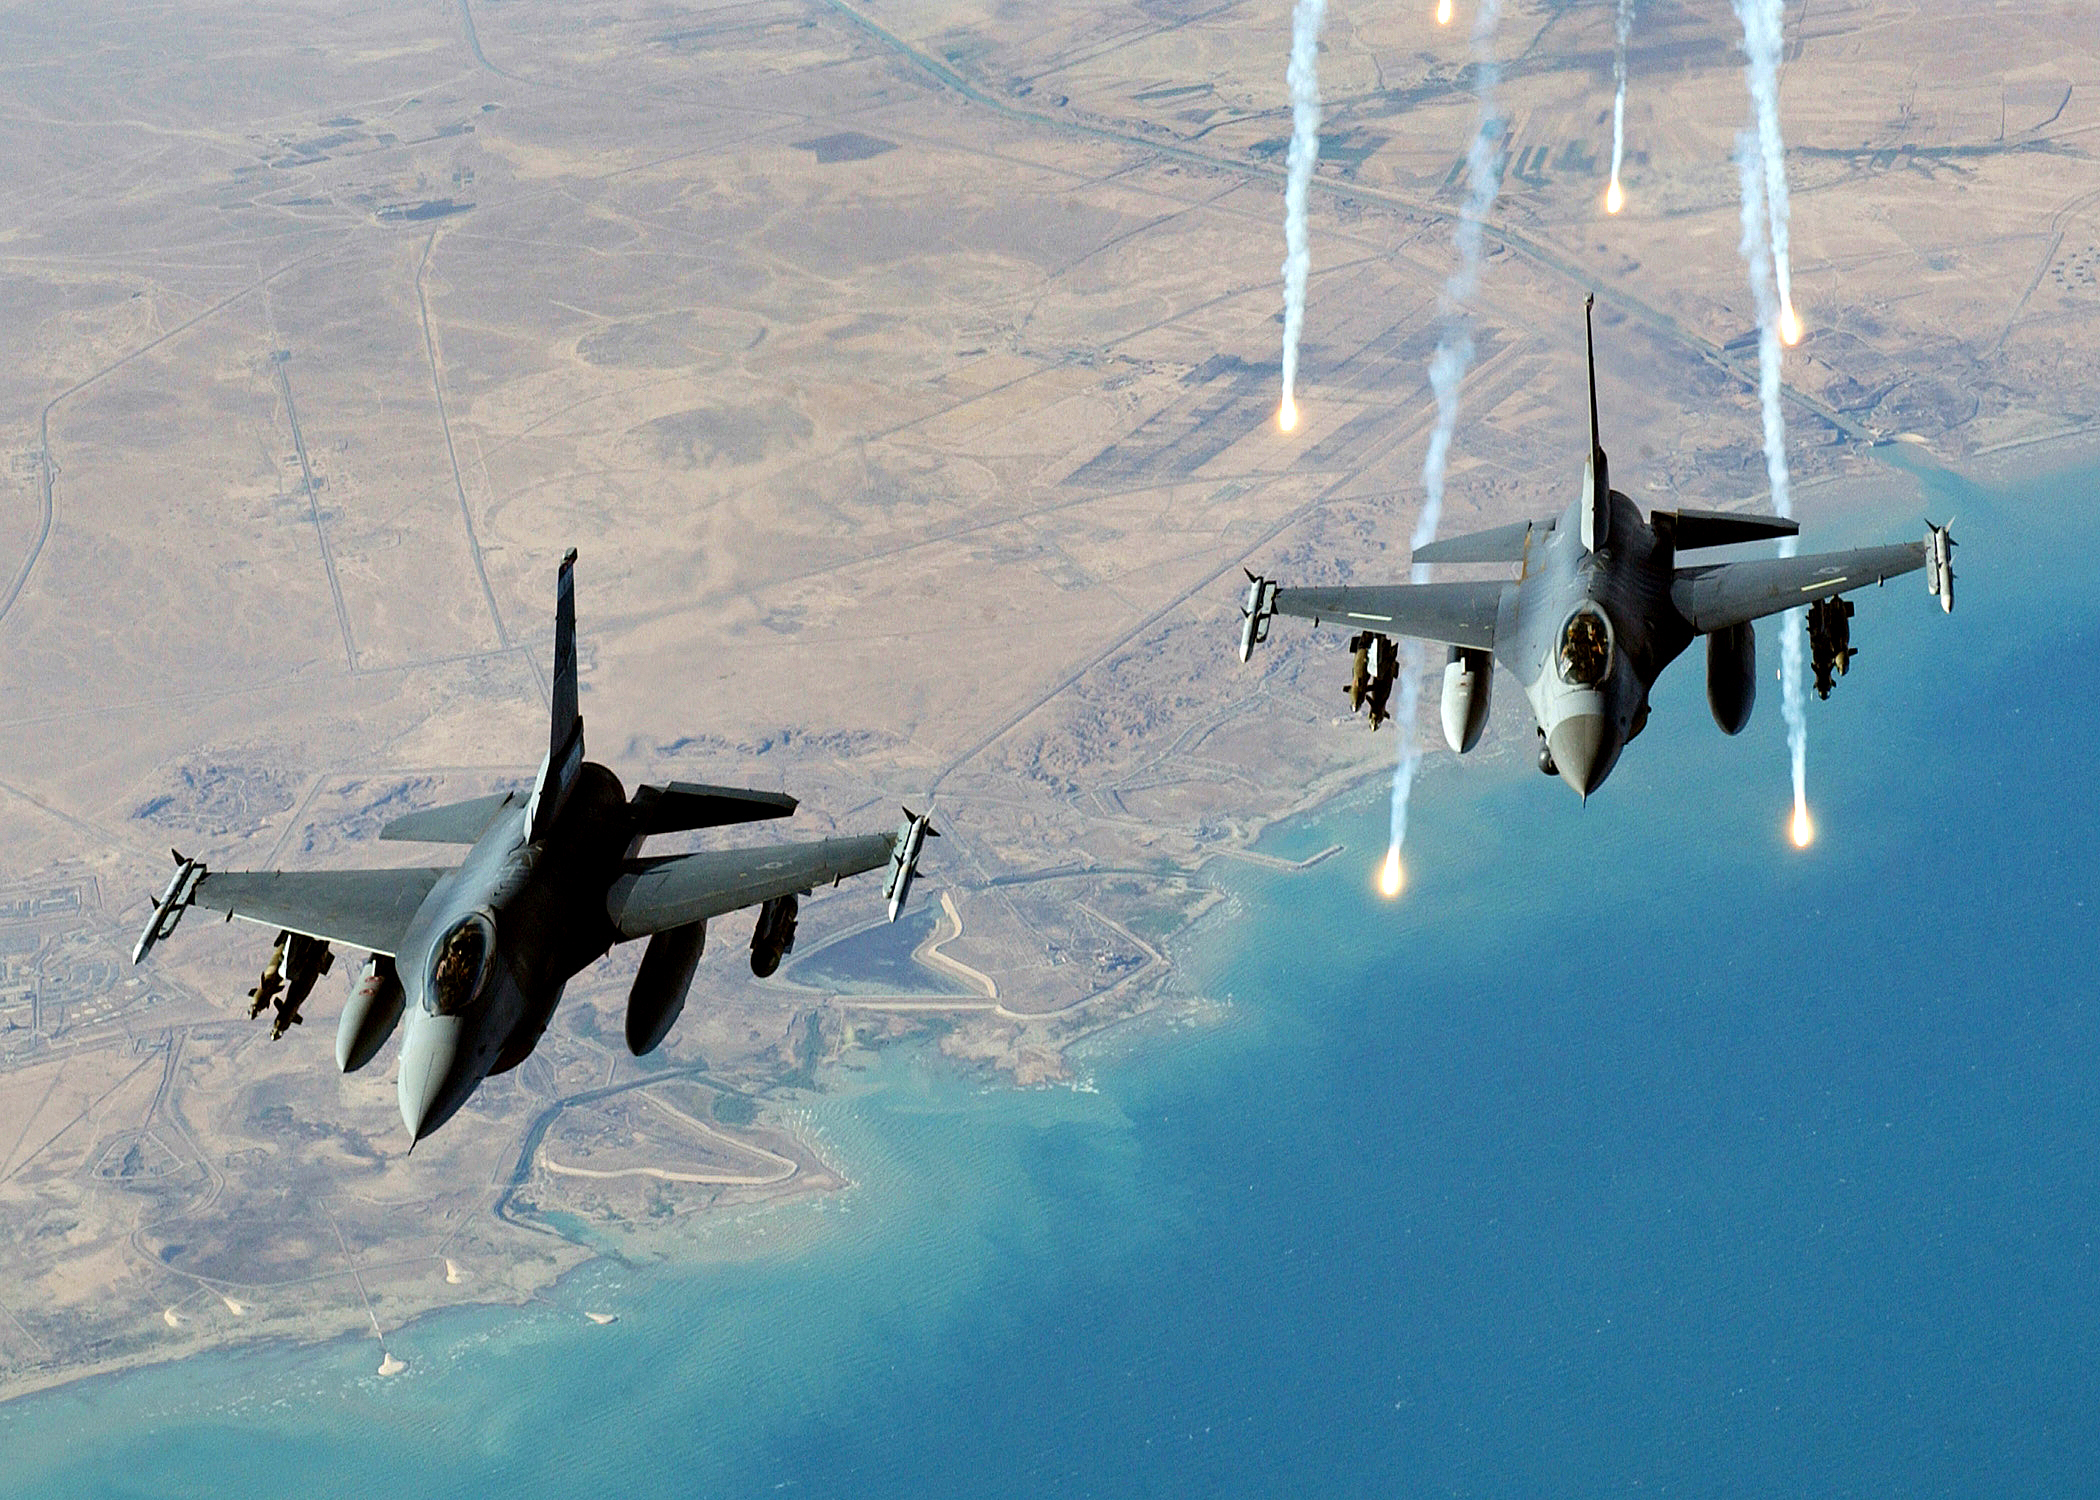 Воздушный бой истребителей. F16 Jet. Самолеты НАТО f16. Военные самолеты США. Истребитель в воздухе.